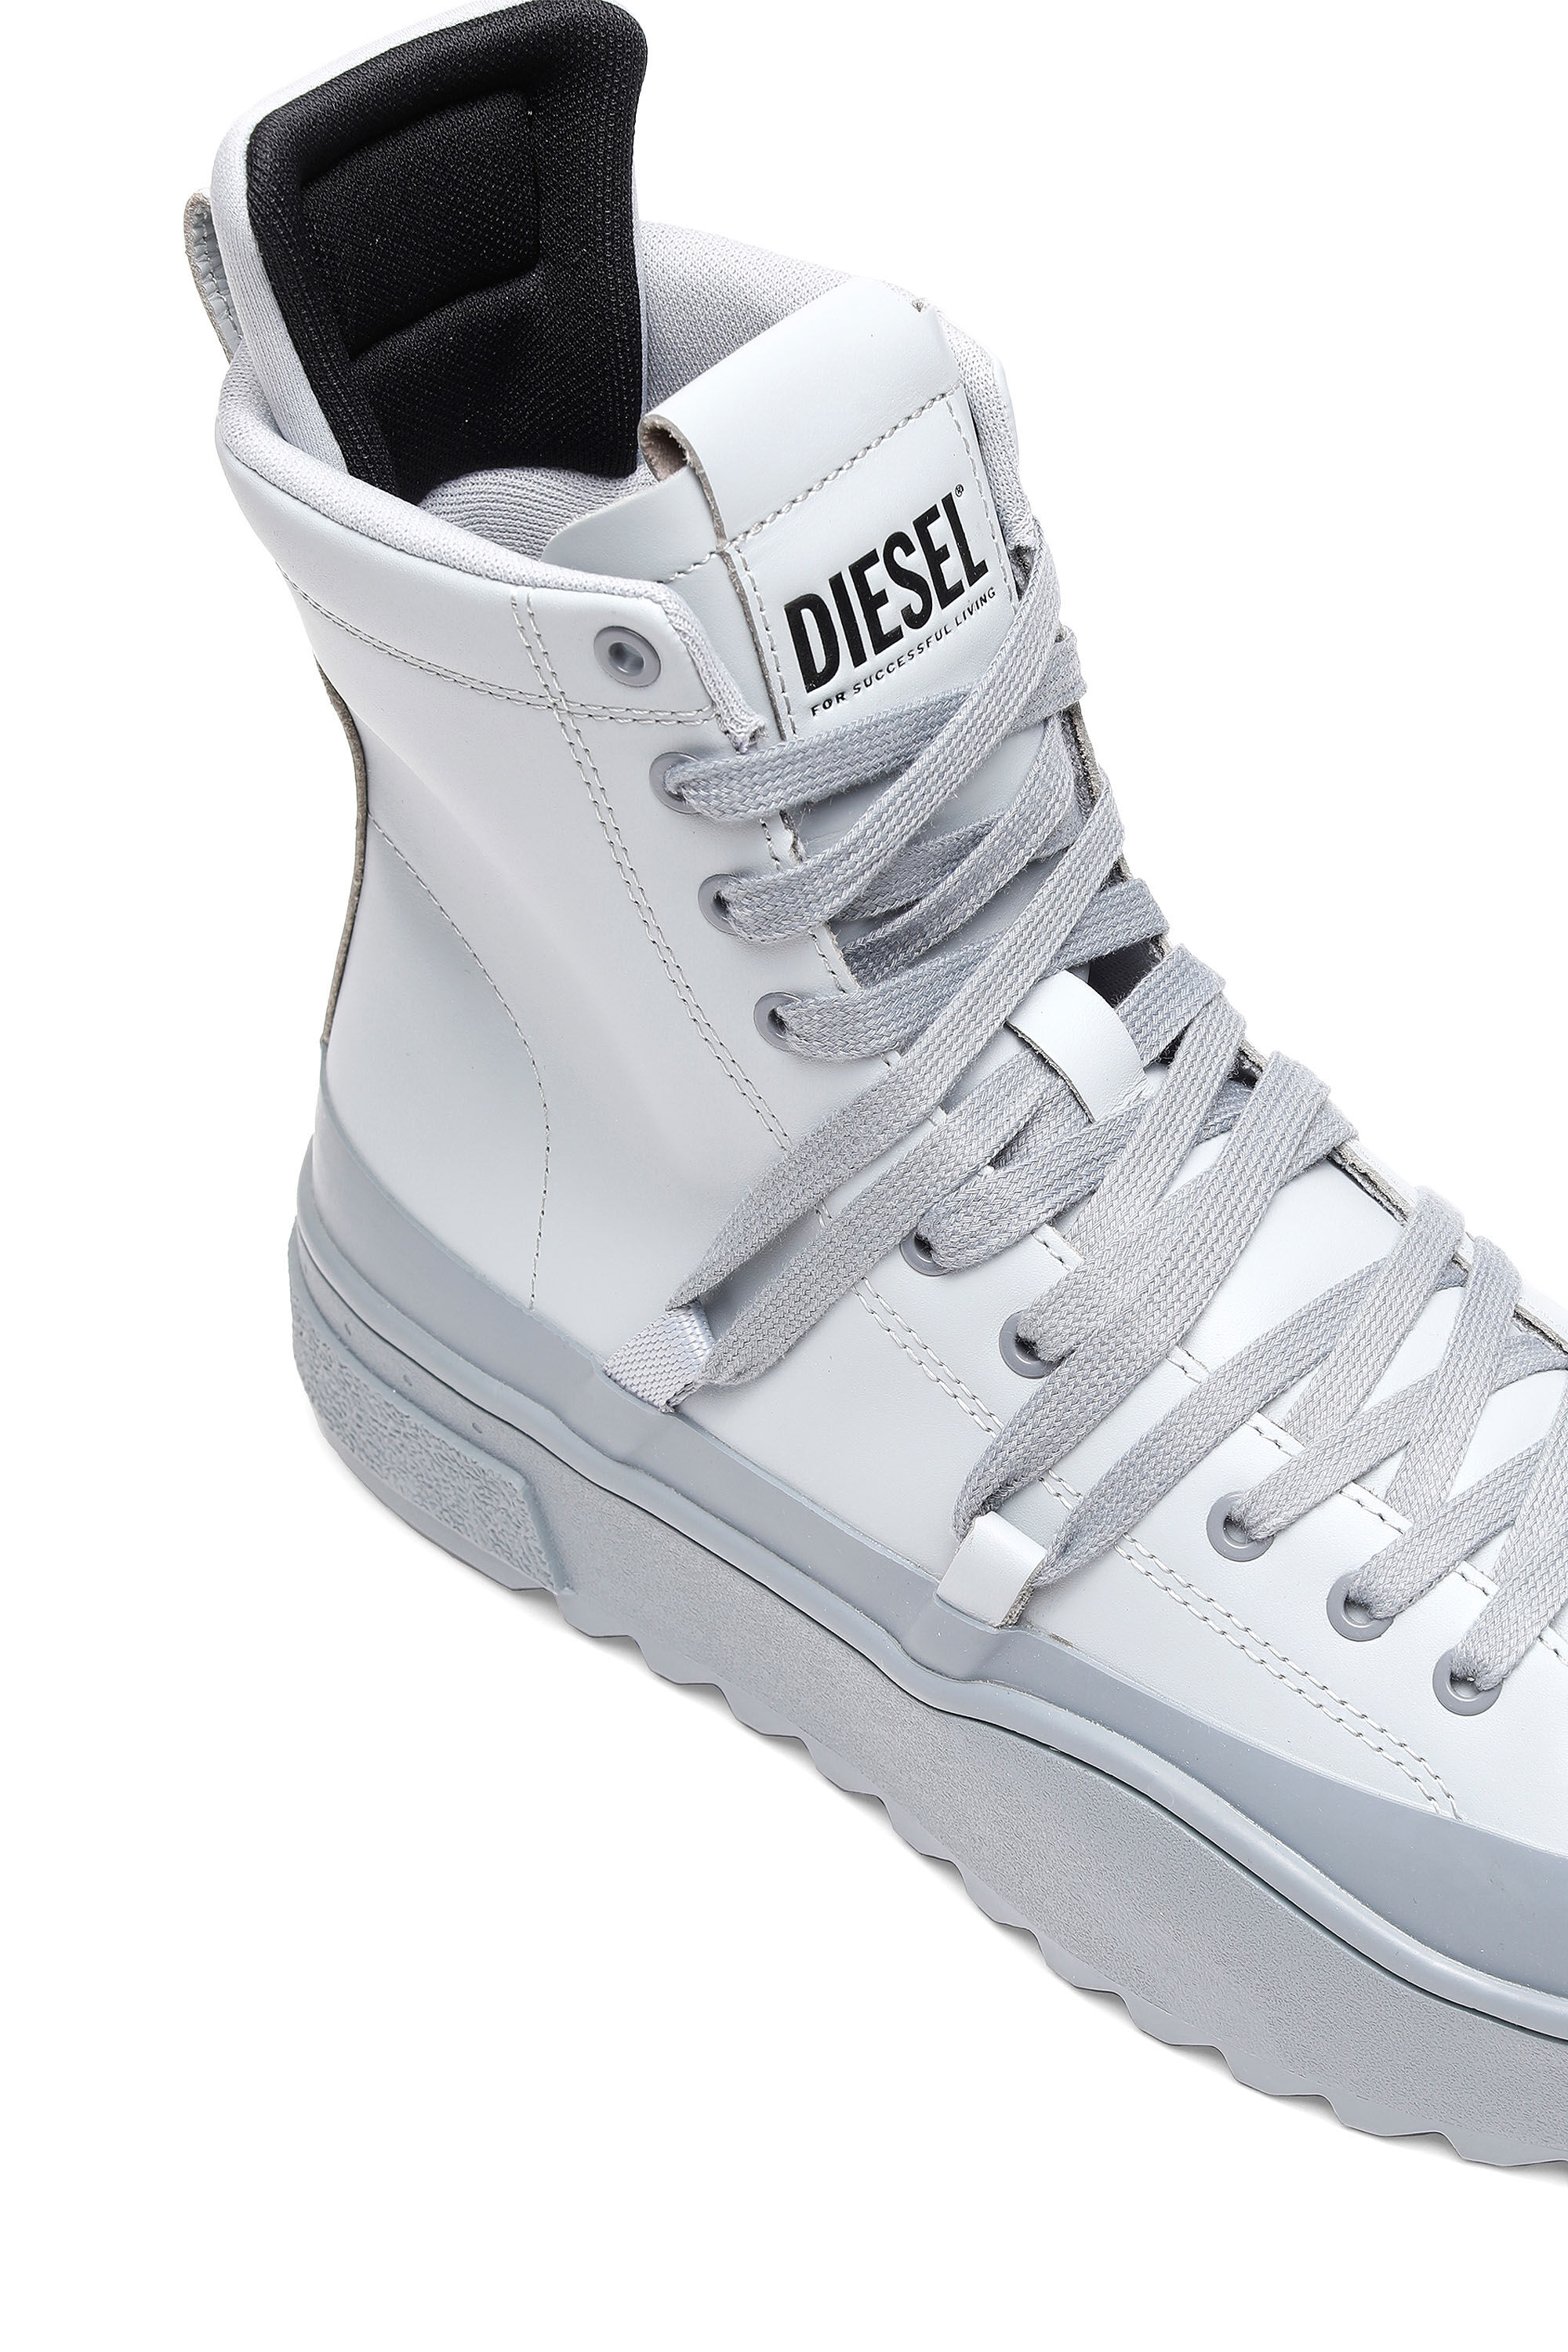 Diesel - H-SHIKA HB, Blanc/Gris - Image 5